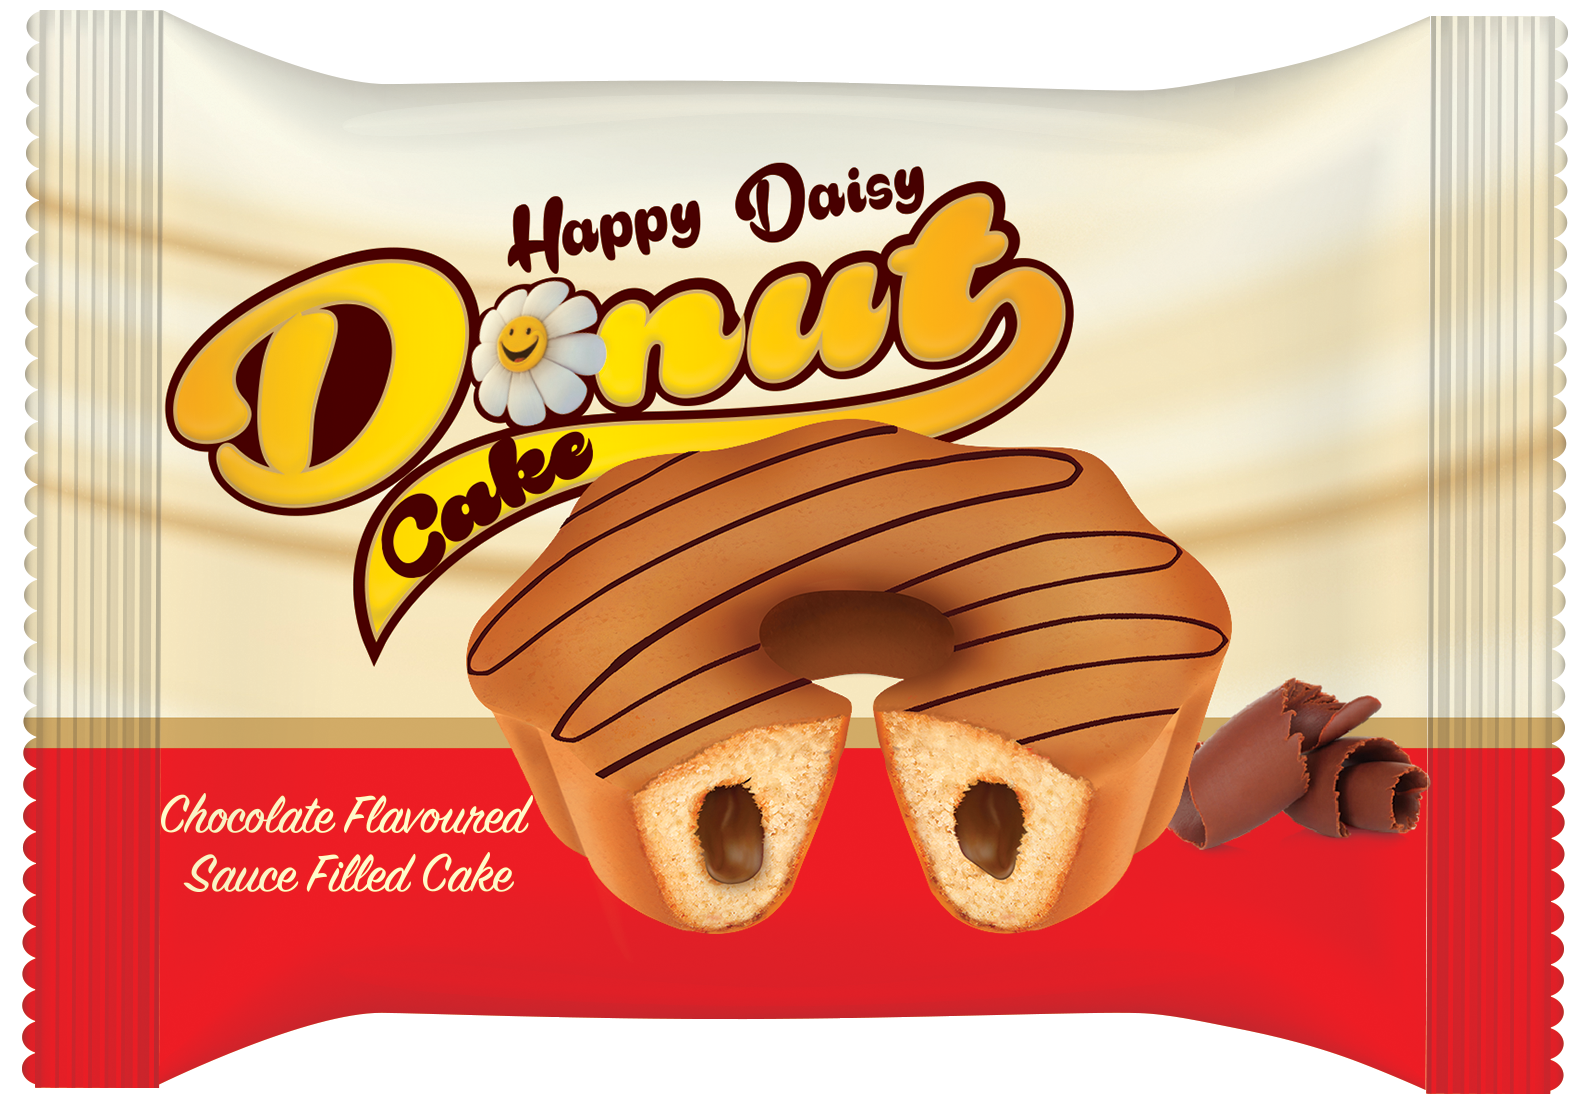 Happy Daisy Donut Cake 